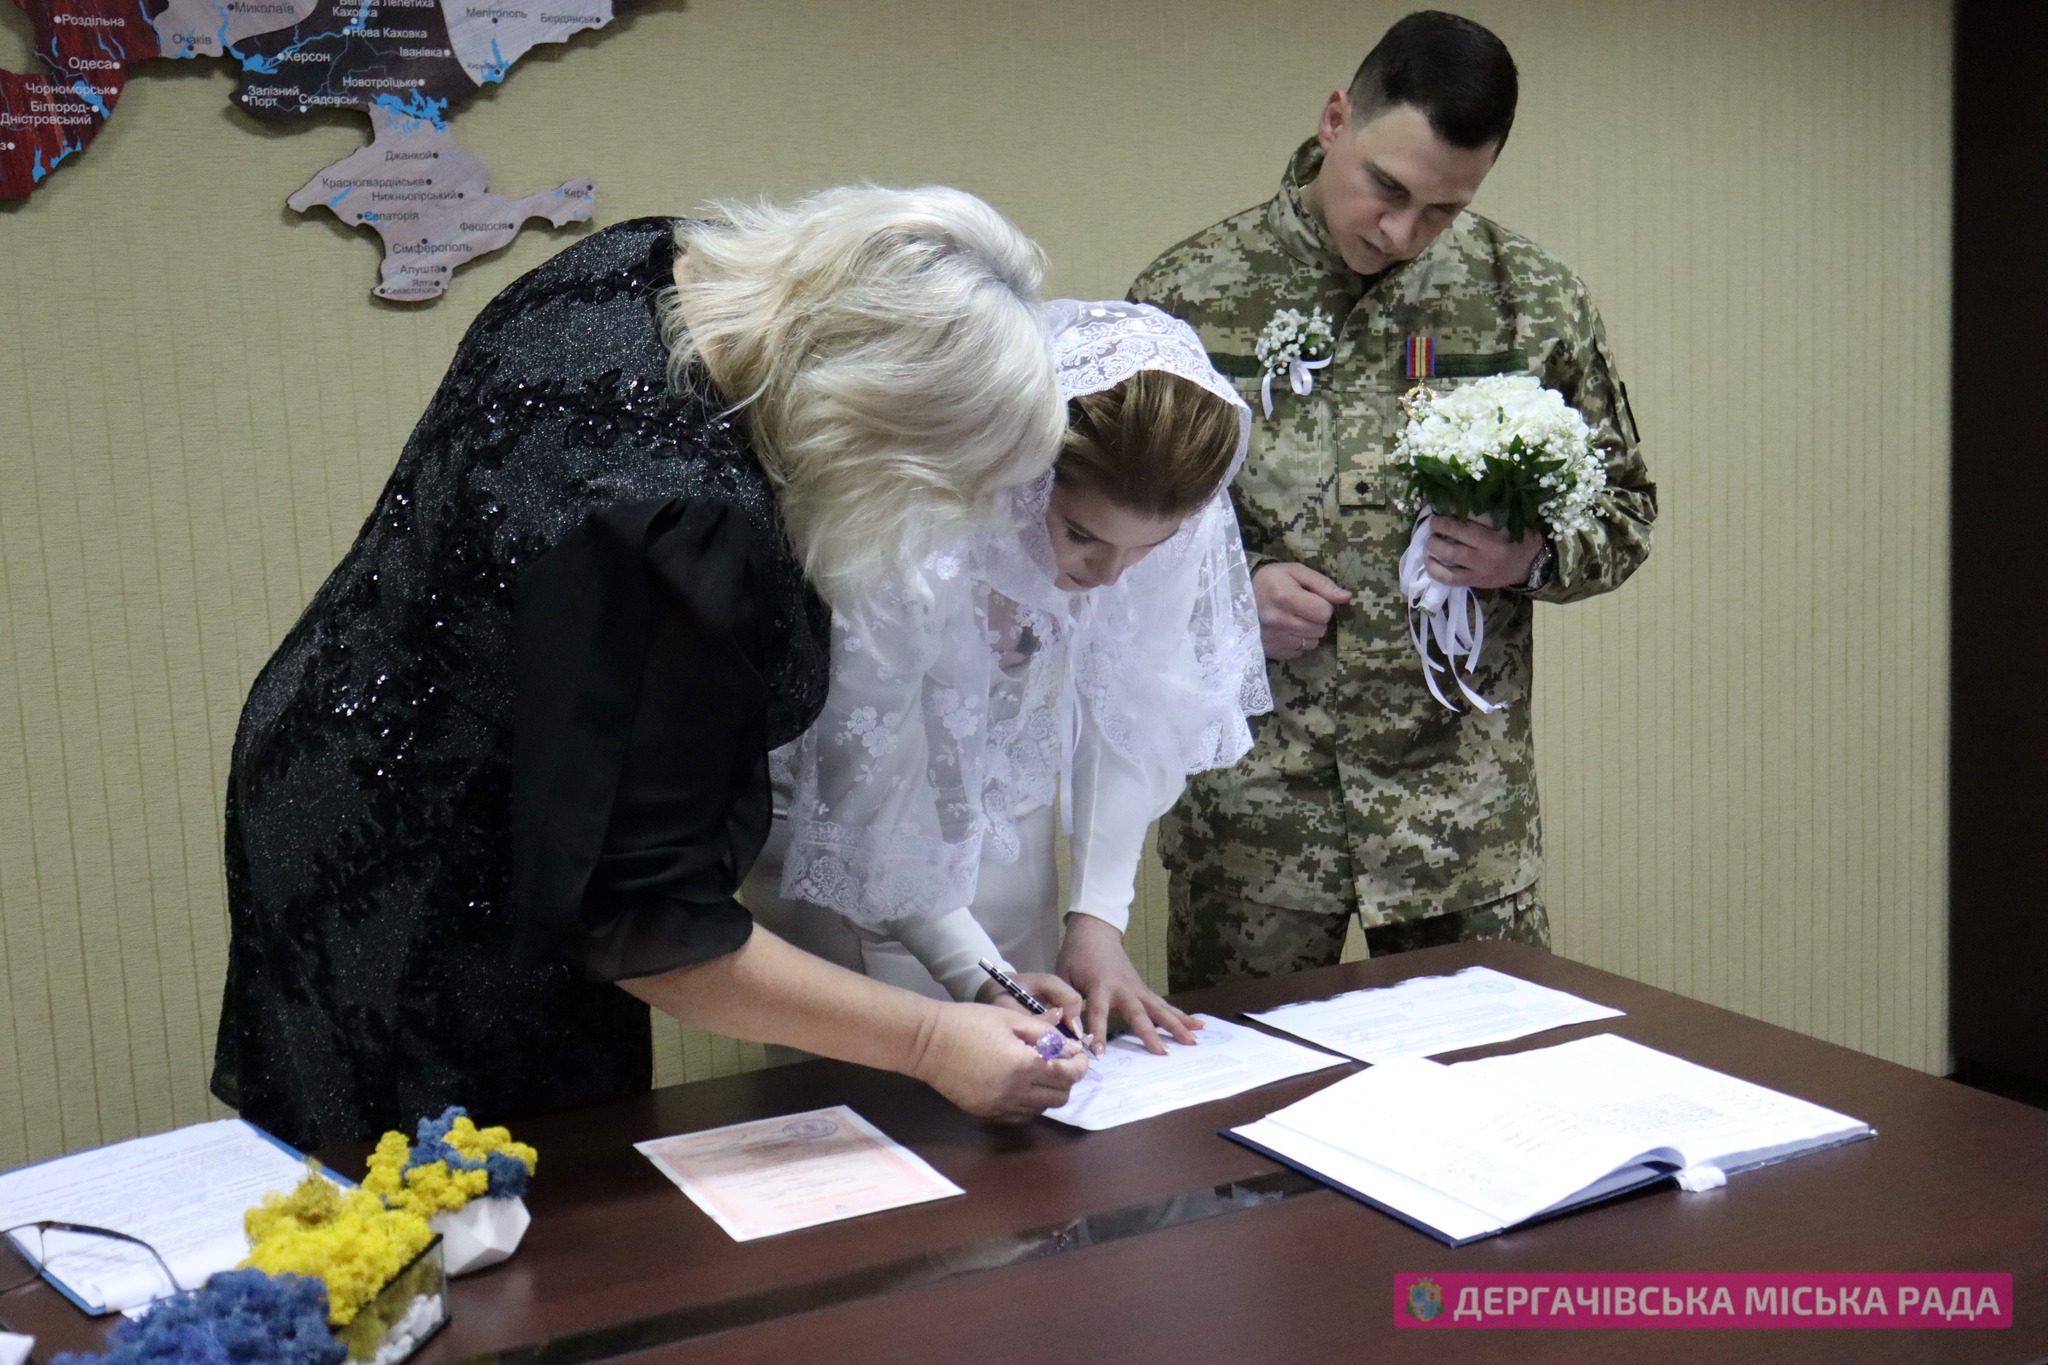 Весілля лейтенанта та солдата на Харківщині 2